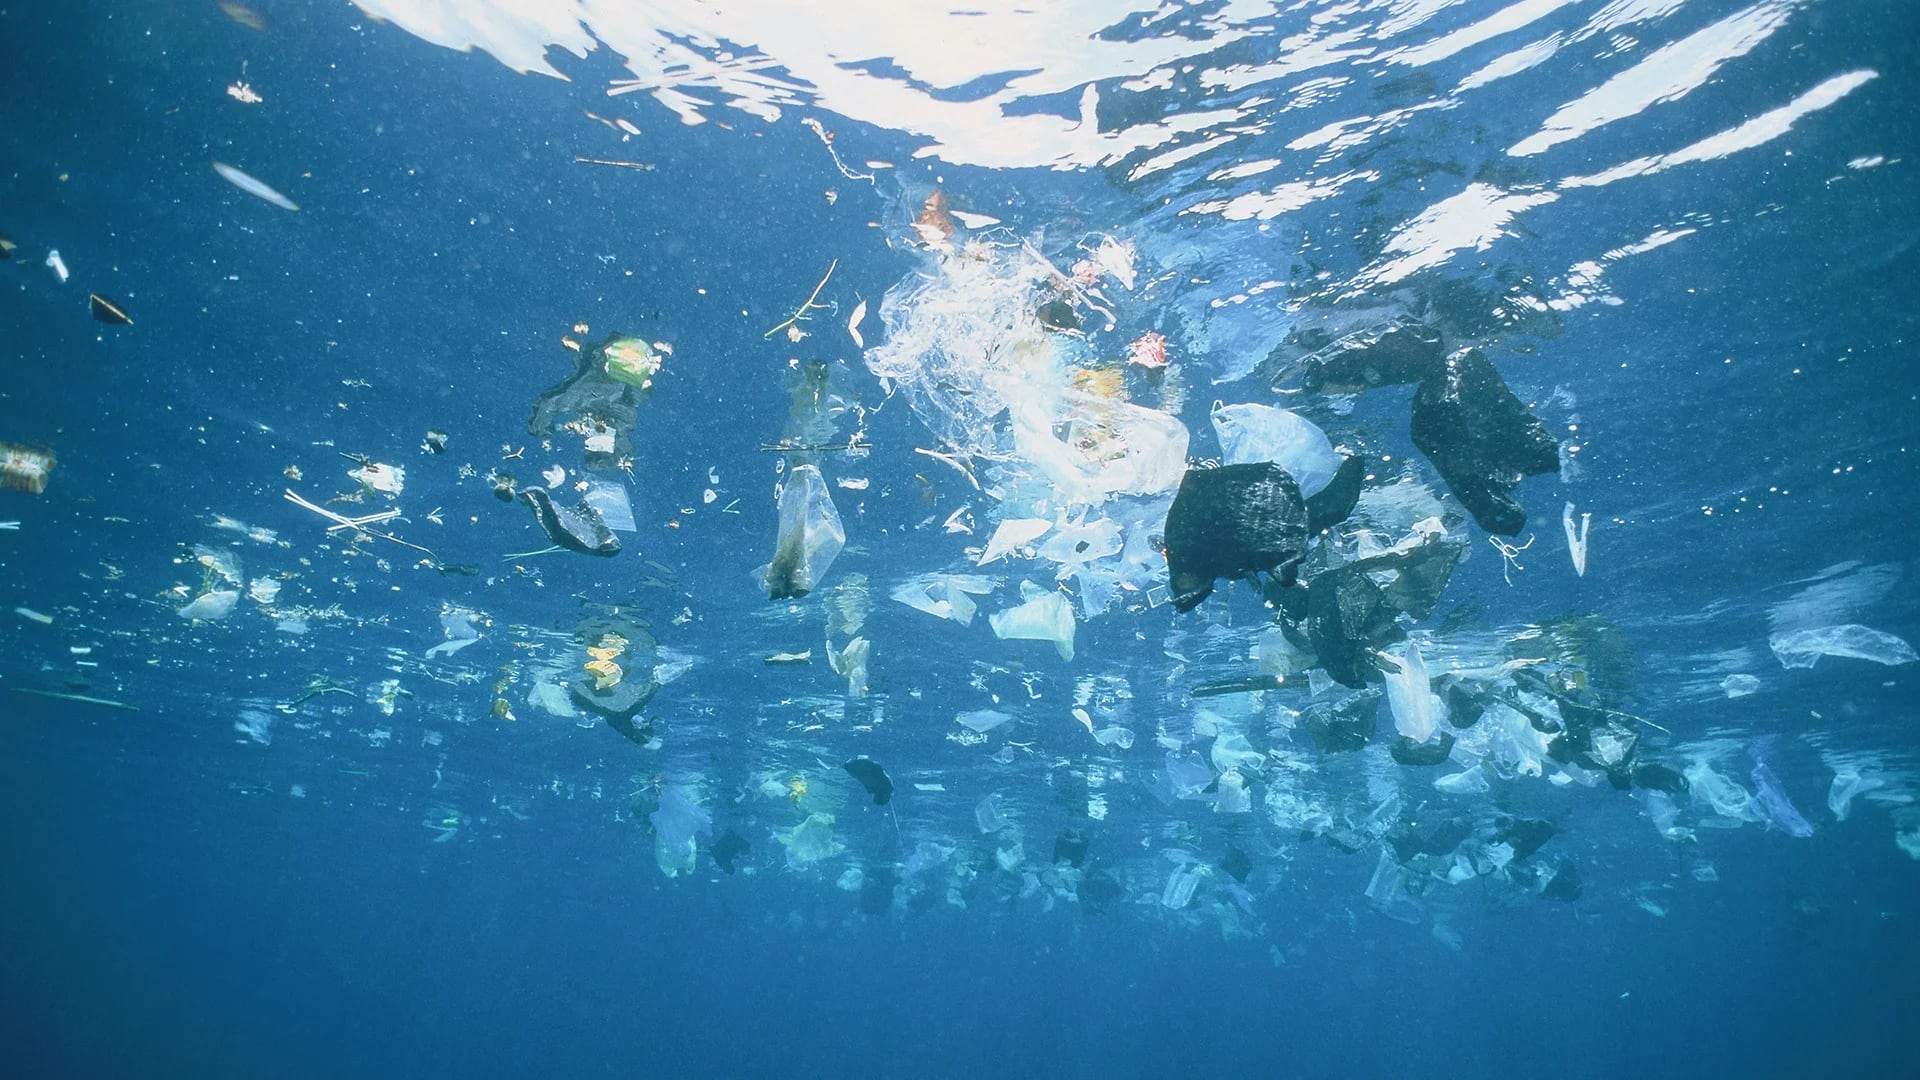 Se estimó que la cantidad de desechos plásticos que ingresan a los ecosistemas acuáticos podría casi triplicarse a una proyección de 23 a 37 millones de toneladas por año para 2040 si no se toman medidas en serio con la producción
(Getty Images)